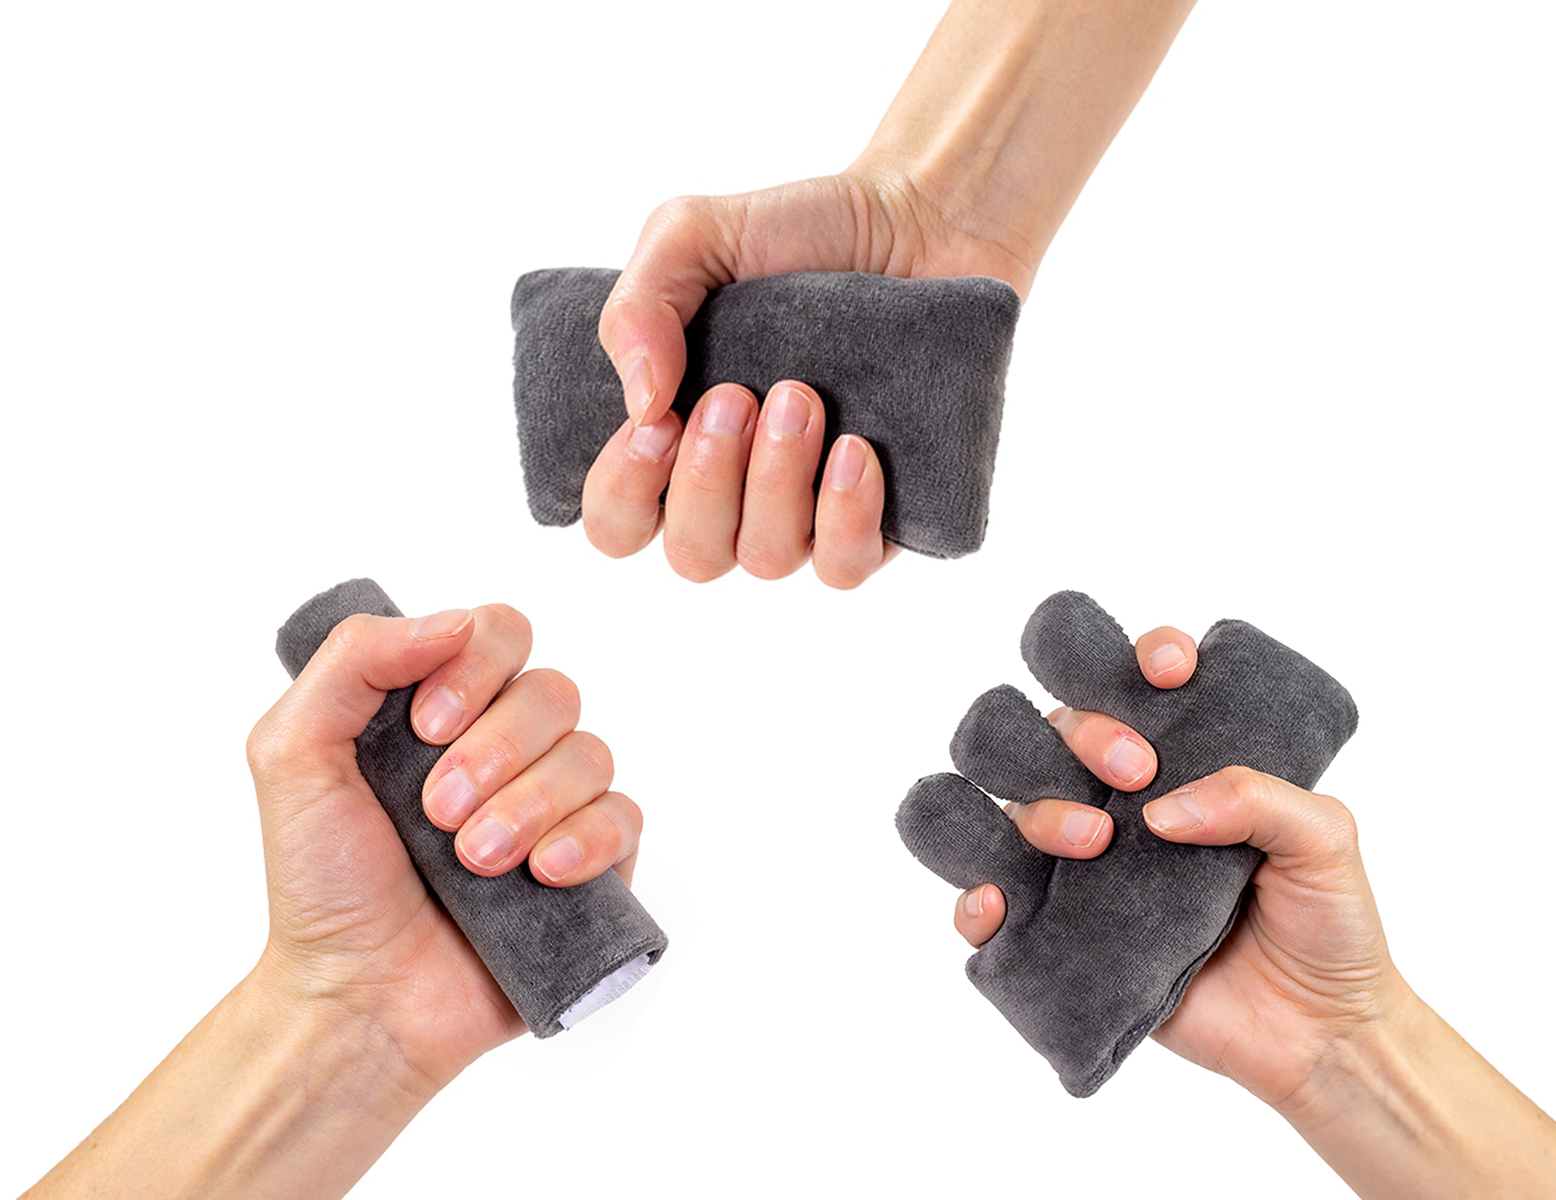 Thérapie anti contracture mains Care pour main, small 5 x 11 cm